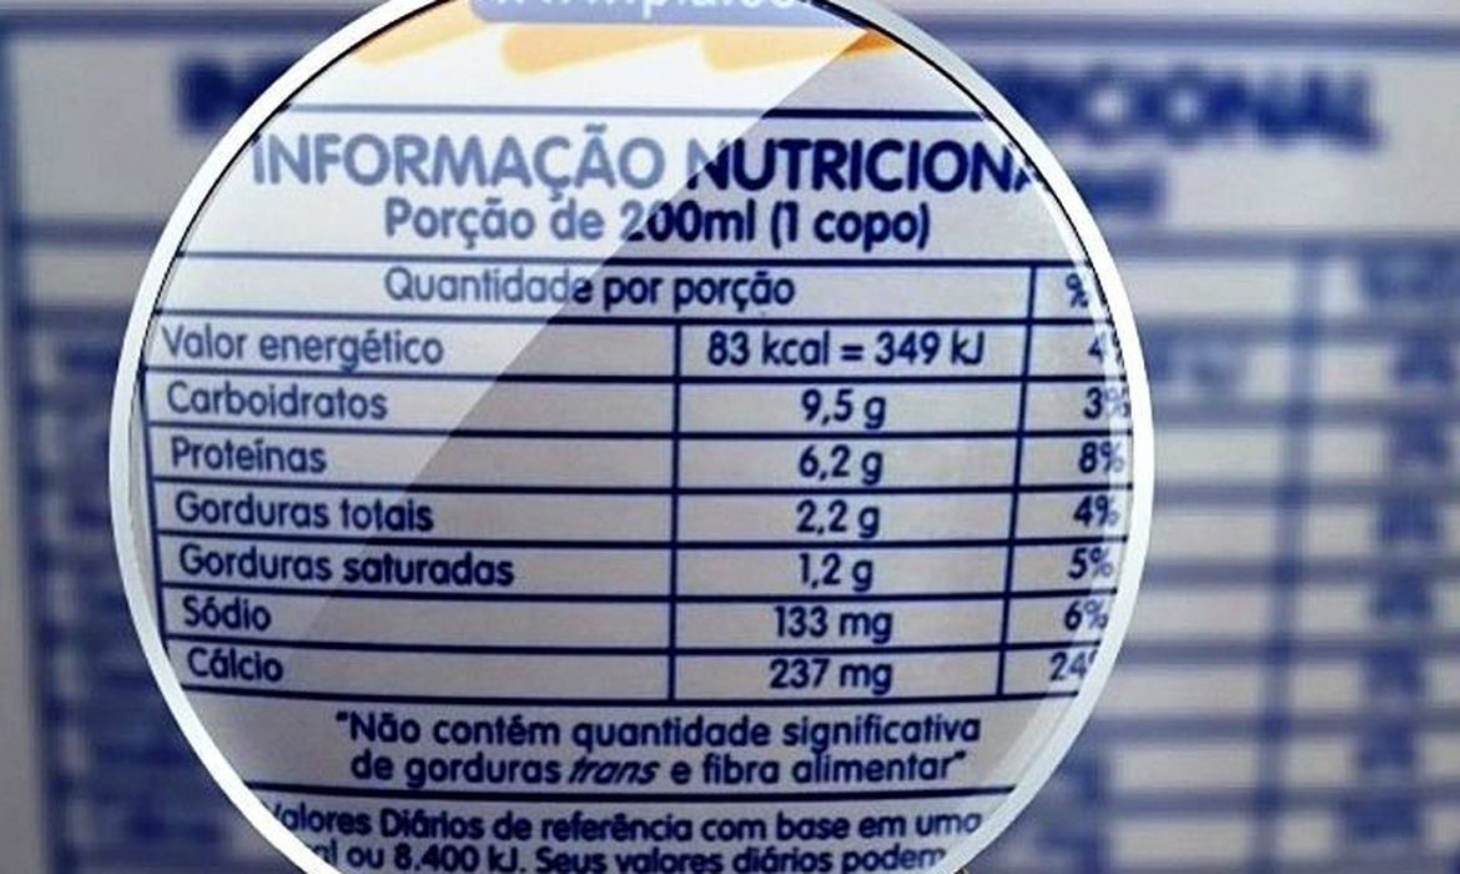 Anvisa aprova norma sobre rótulo nutricional em embalagens | Jornal da Orla